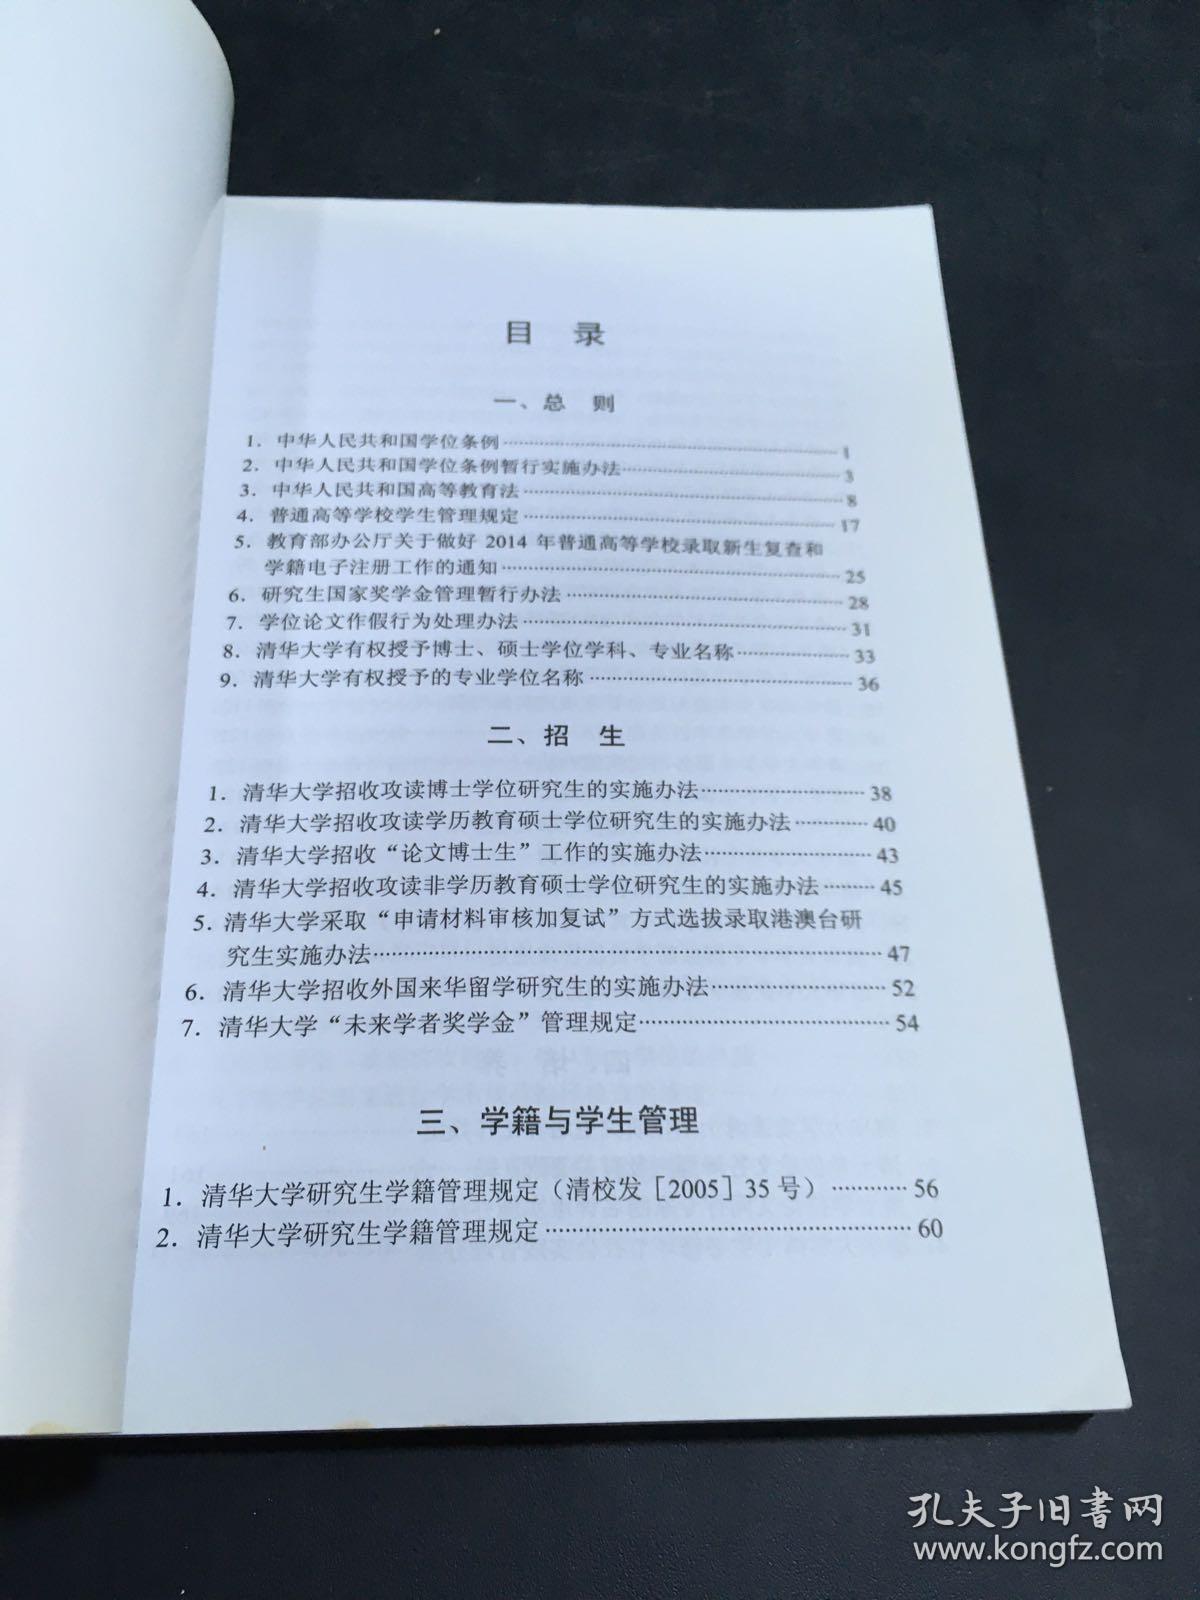 清华大学·研究生工作手册 2015